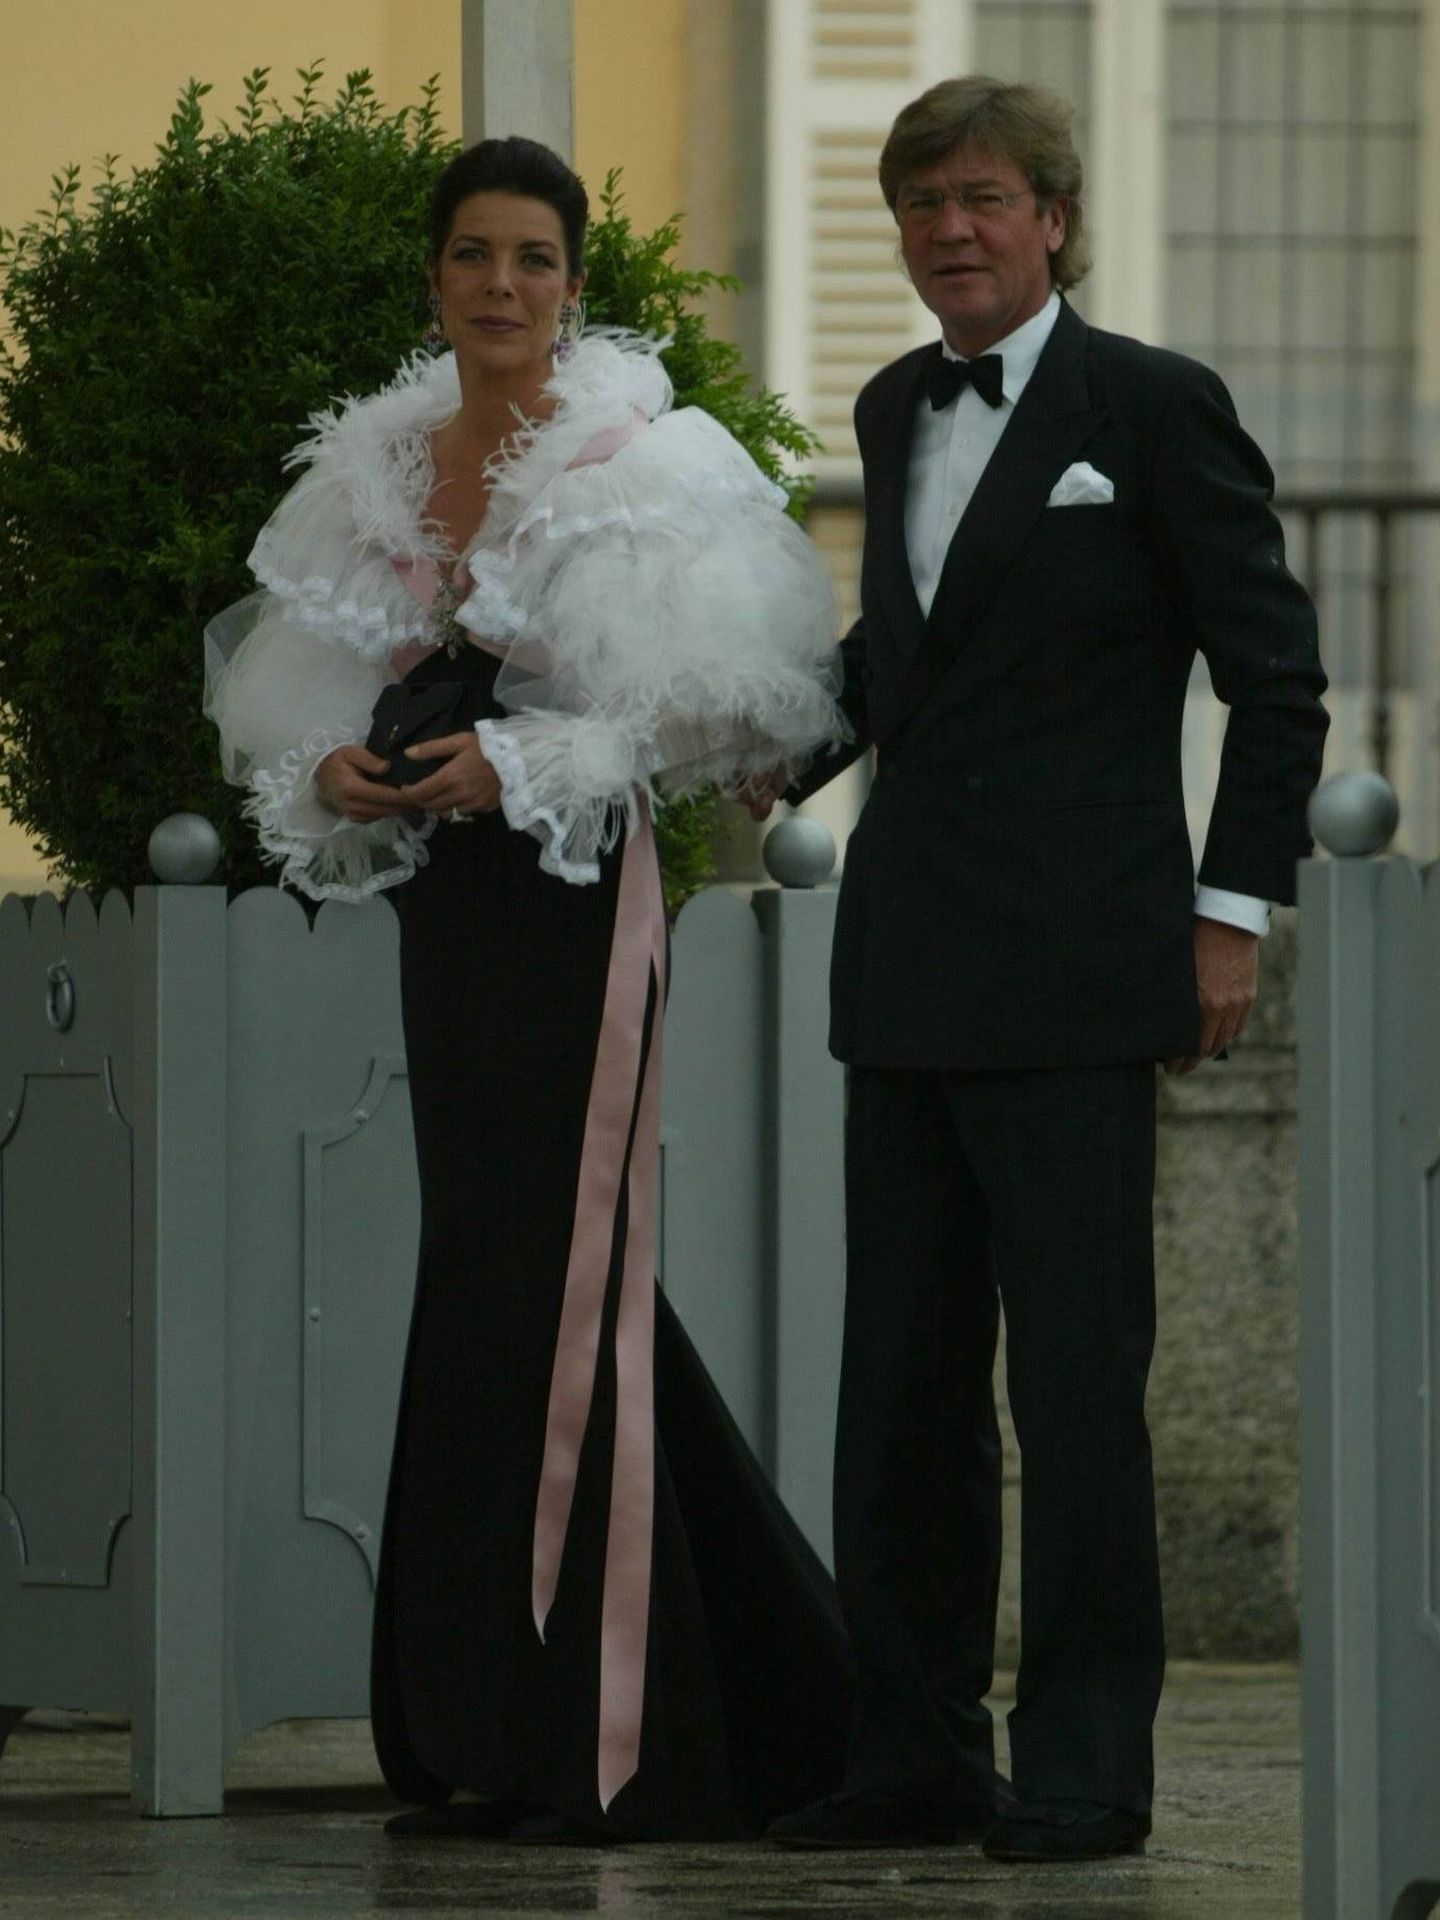 Cena de gala anterior a la boda del príncipe Felipe y Letizia Ortiz. (Cordon Press)